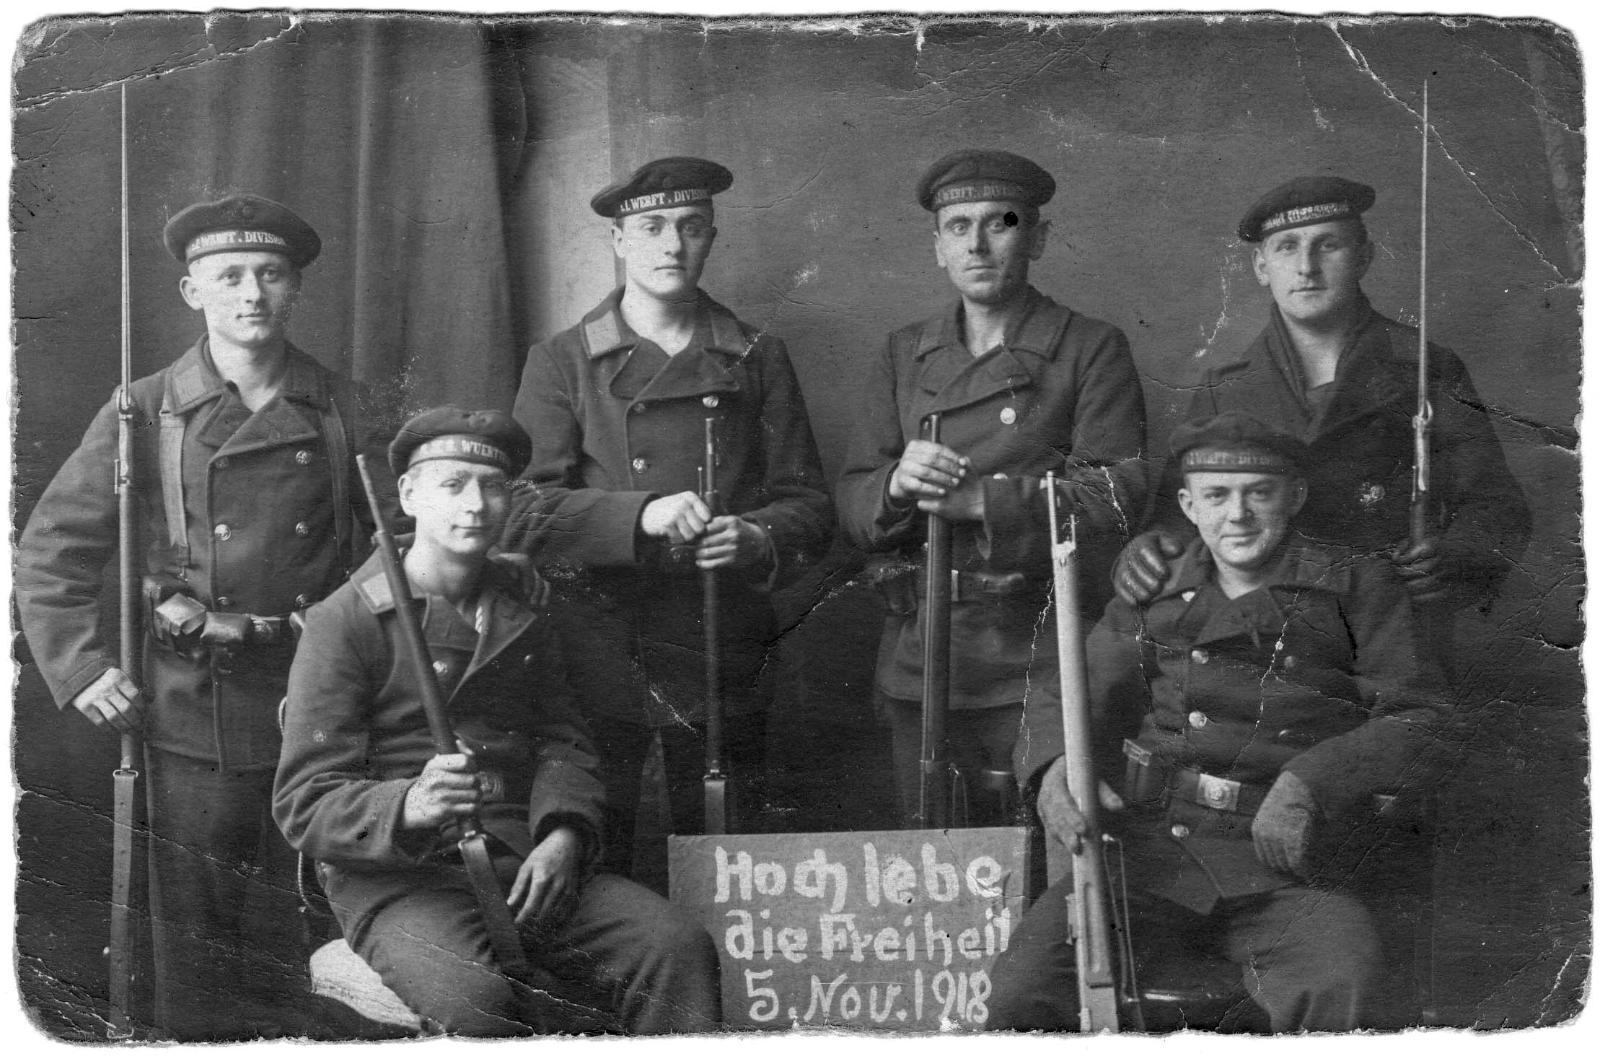 Кильские матросы, фото 5 ноября 1918 г. Надпись на табличке: «Да здравствует свобода!».